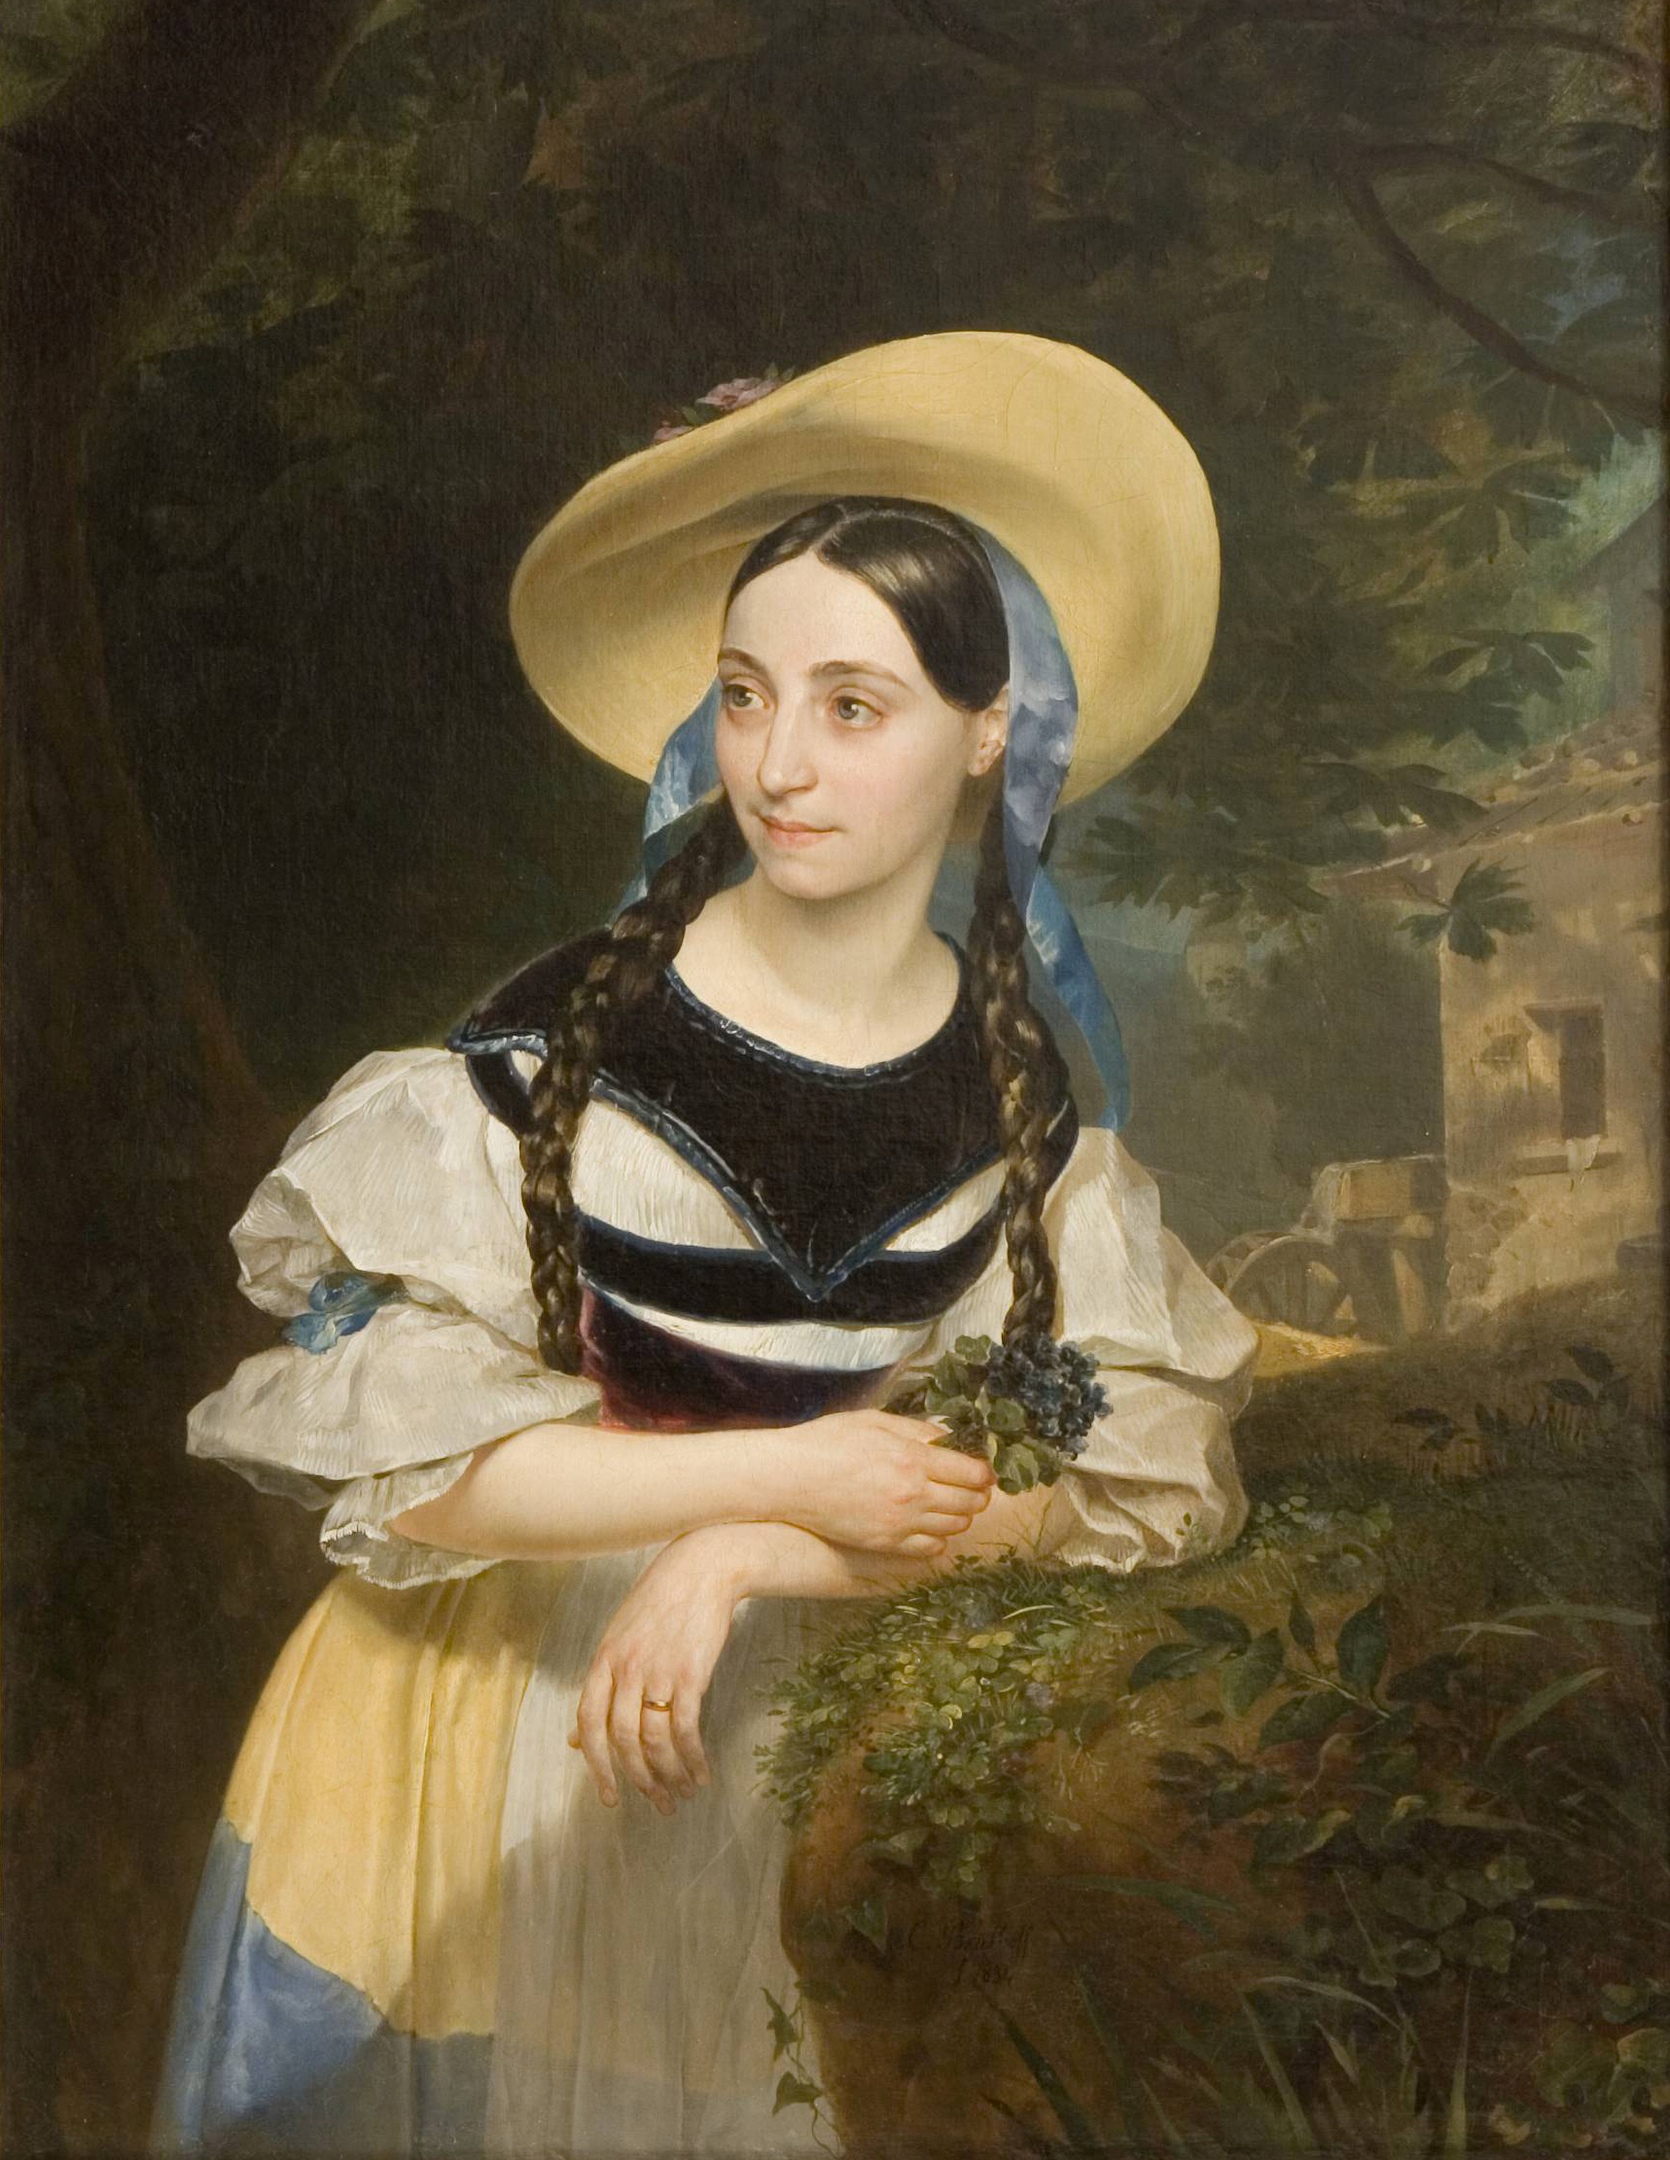 پرتره فانی پرشیانی-تاکیناردی در نقش آمنه by Karl Bryullov - 1834 میلادی 